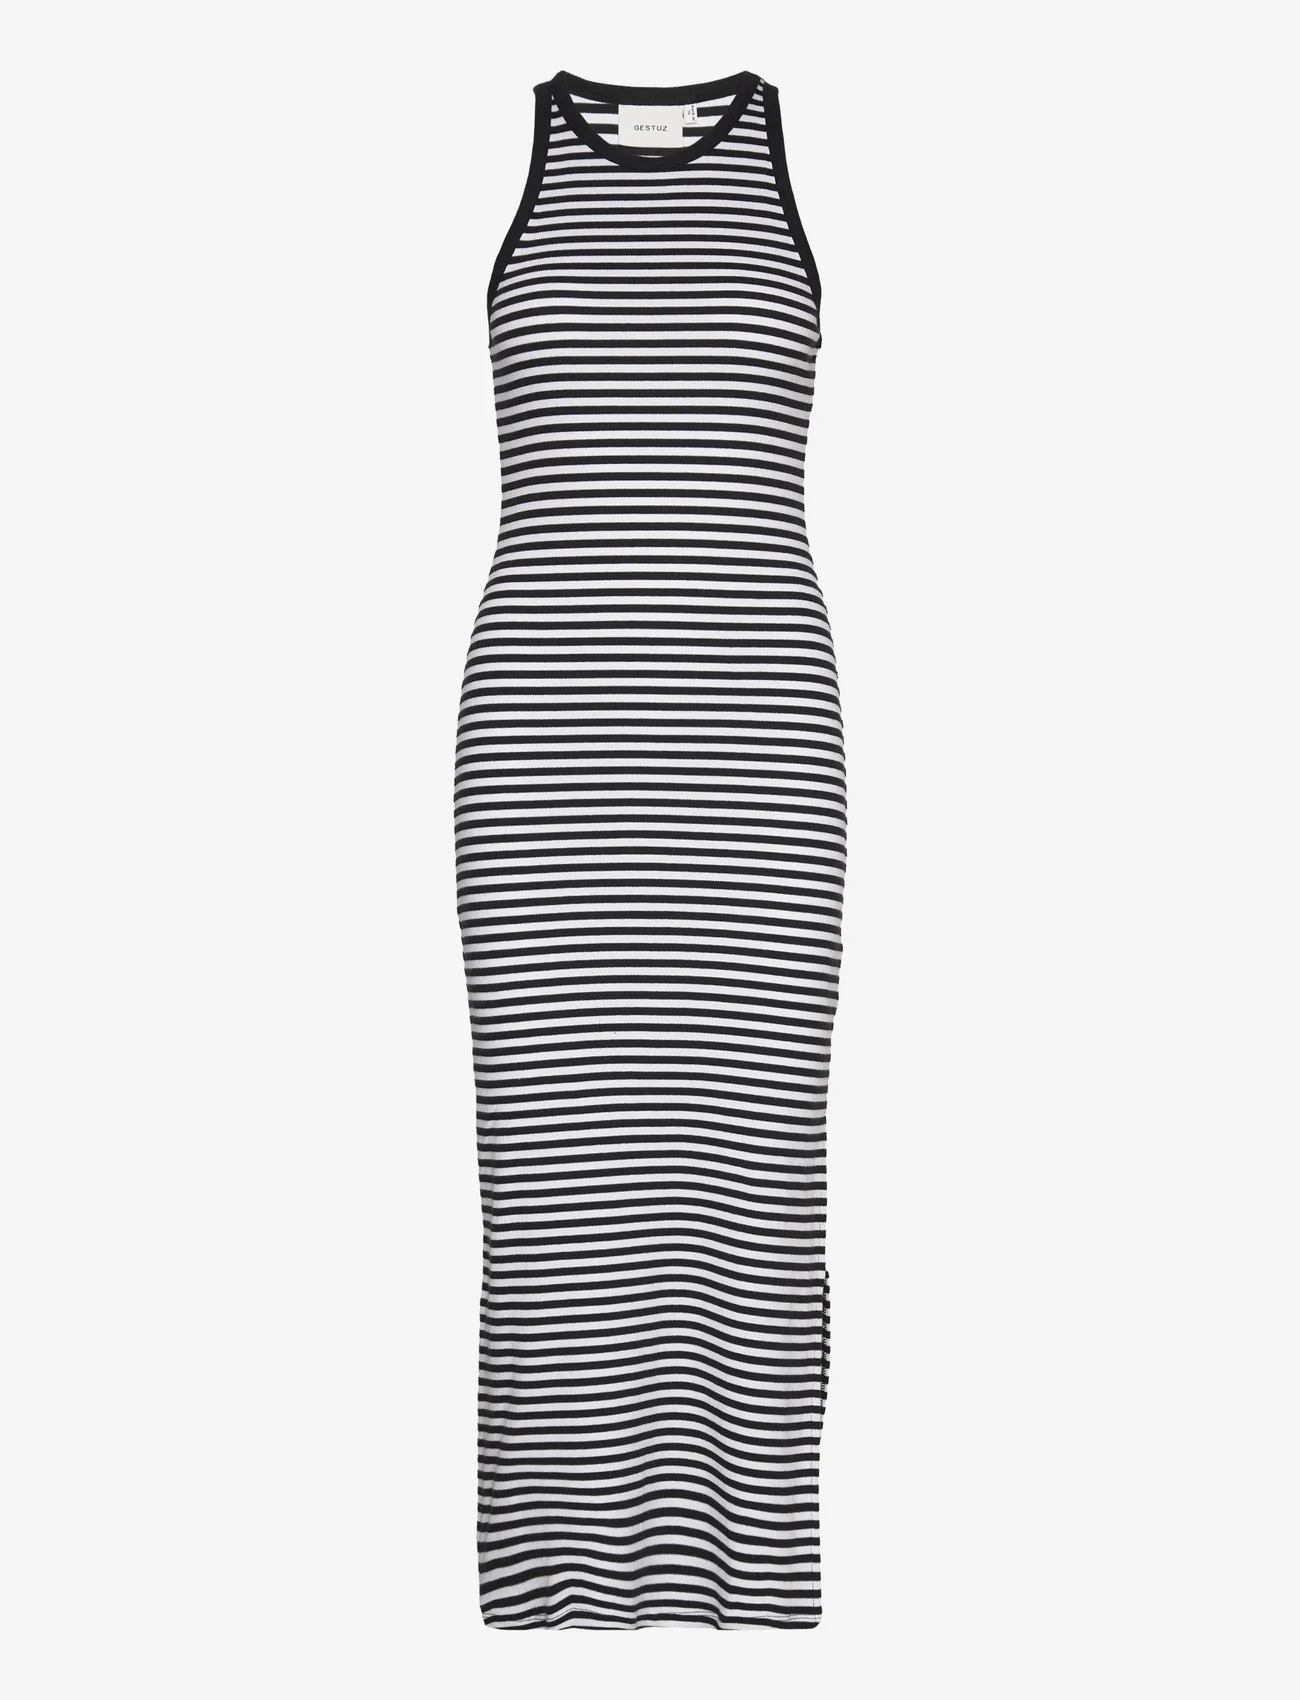 Gestuz - DrewGZ striped sl long dress - fodralklänningar - black/white stripe - 1